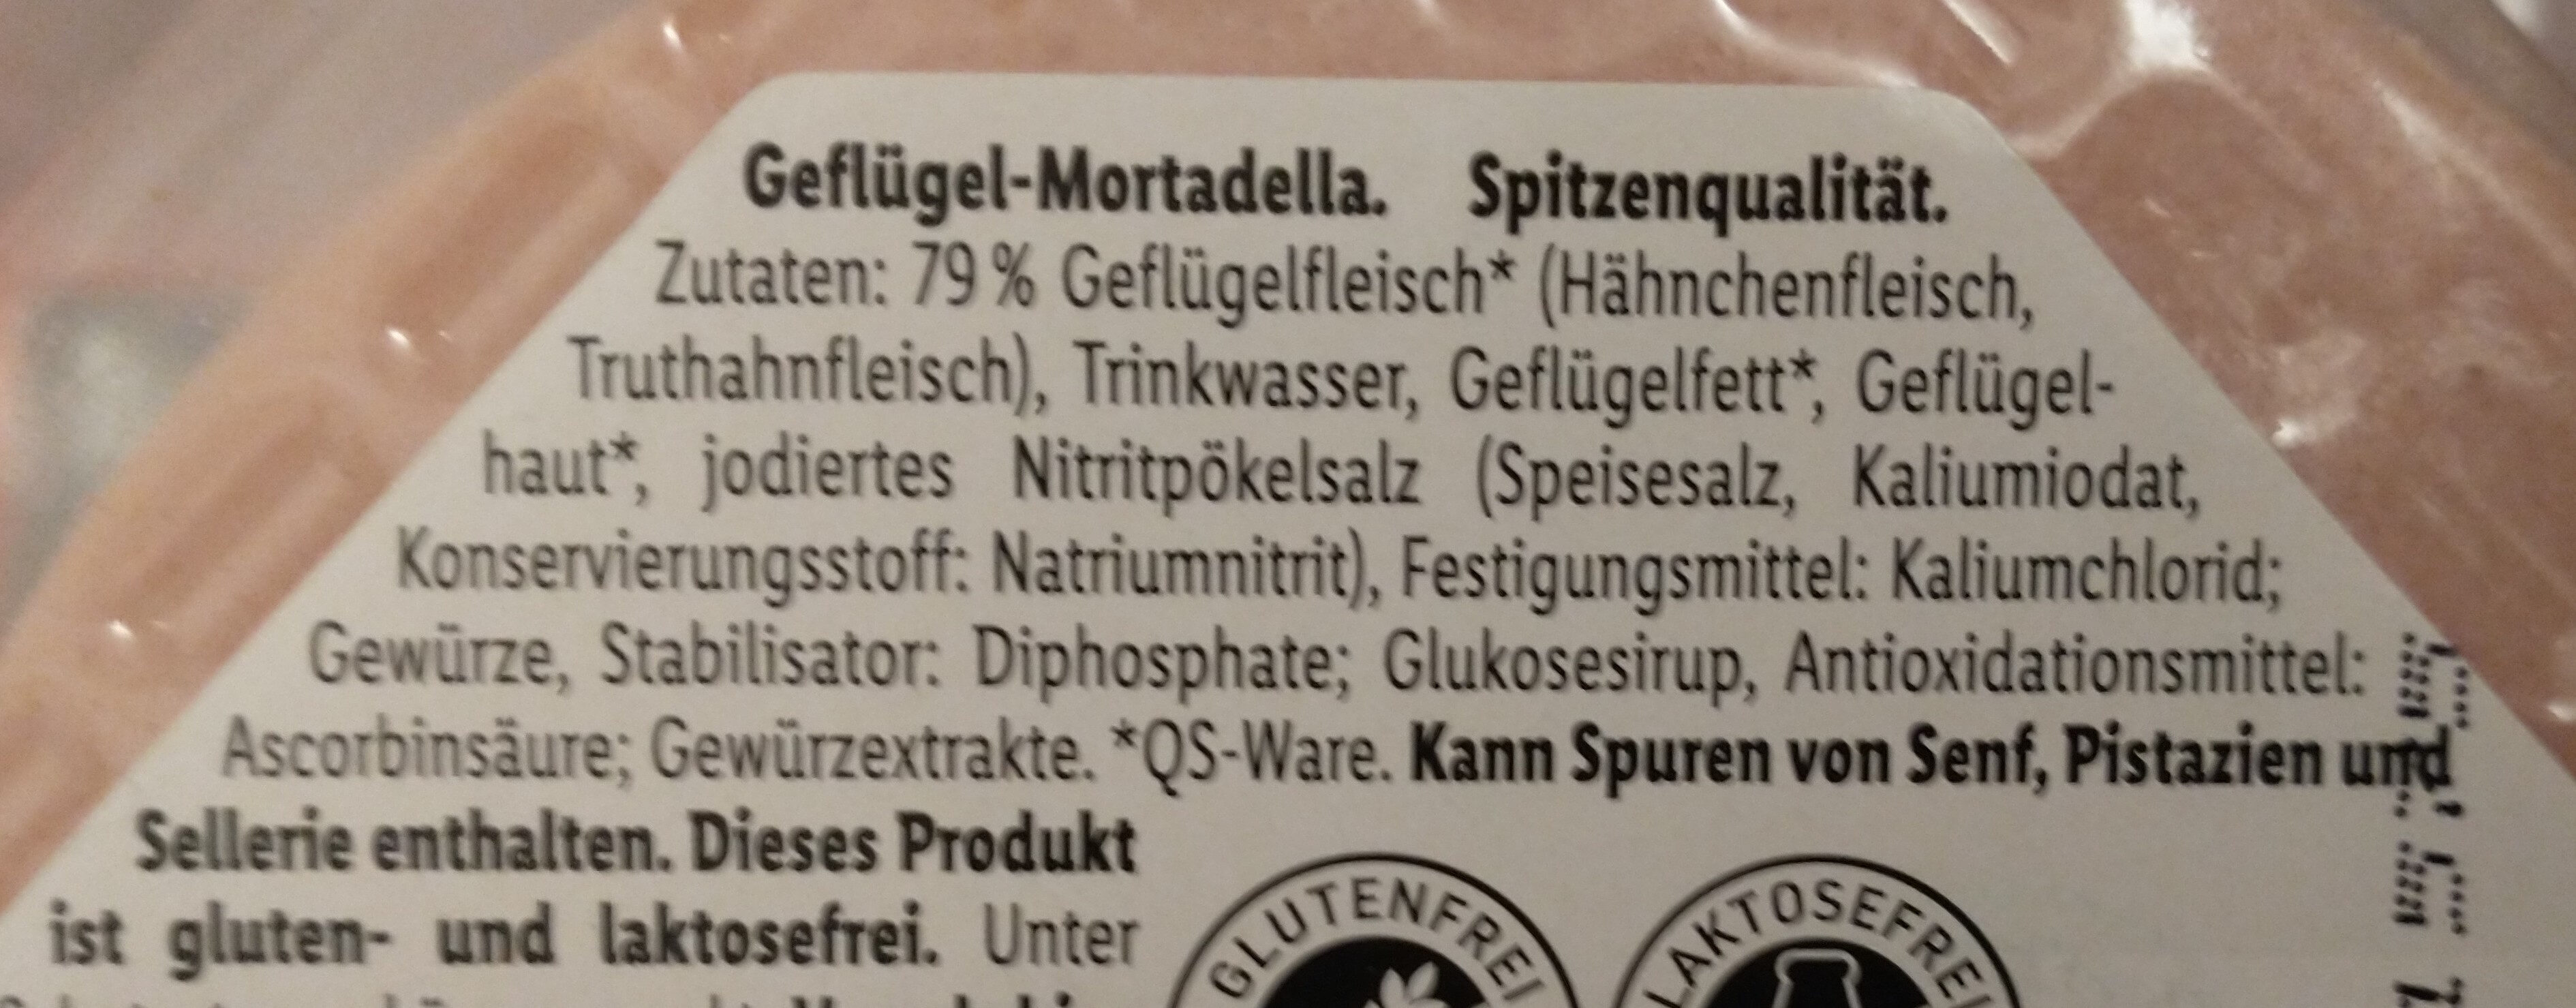 Geflügel-Mortadella - Ingredients - de